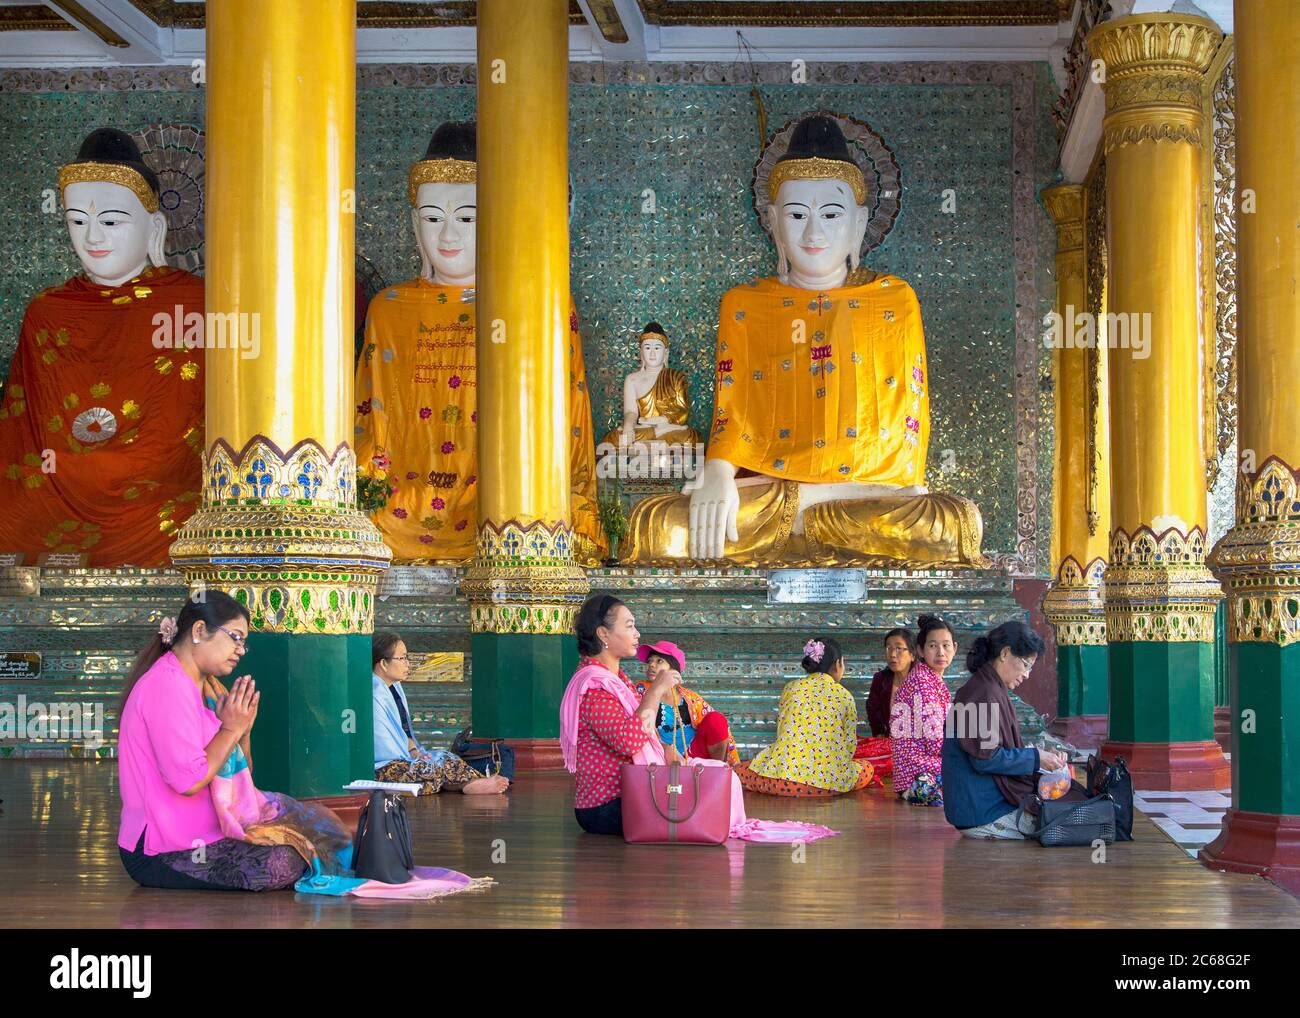 Worshippers with Buddha Statues in the Shwedagon Pagoda, Yangon, Myanmar Stock Photo